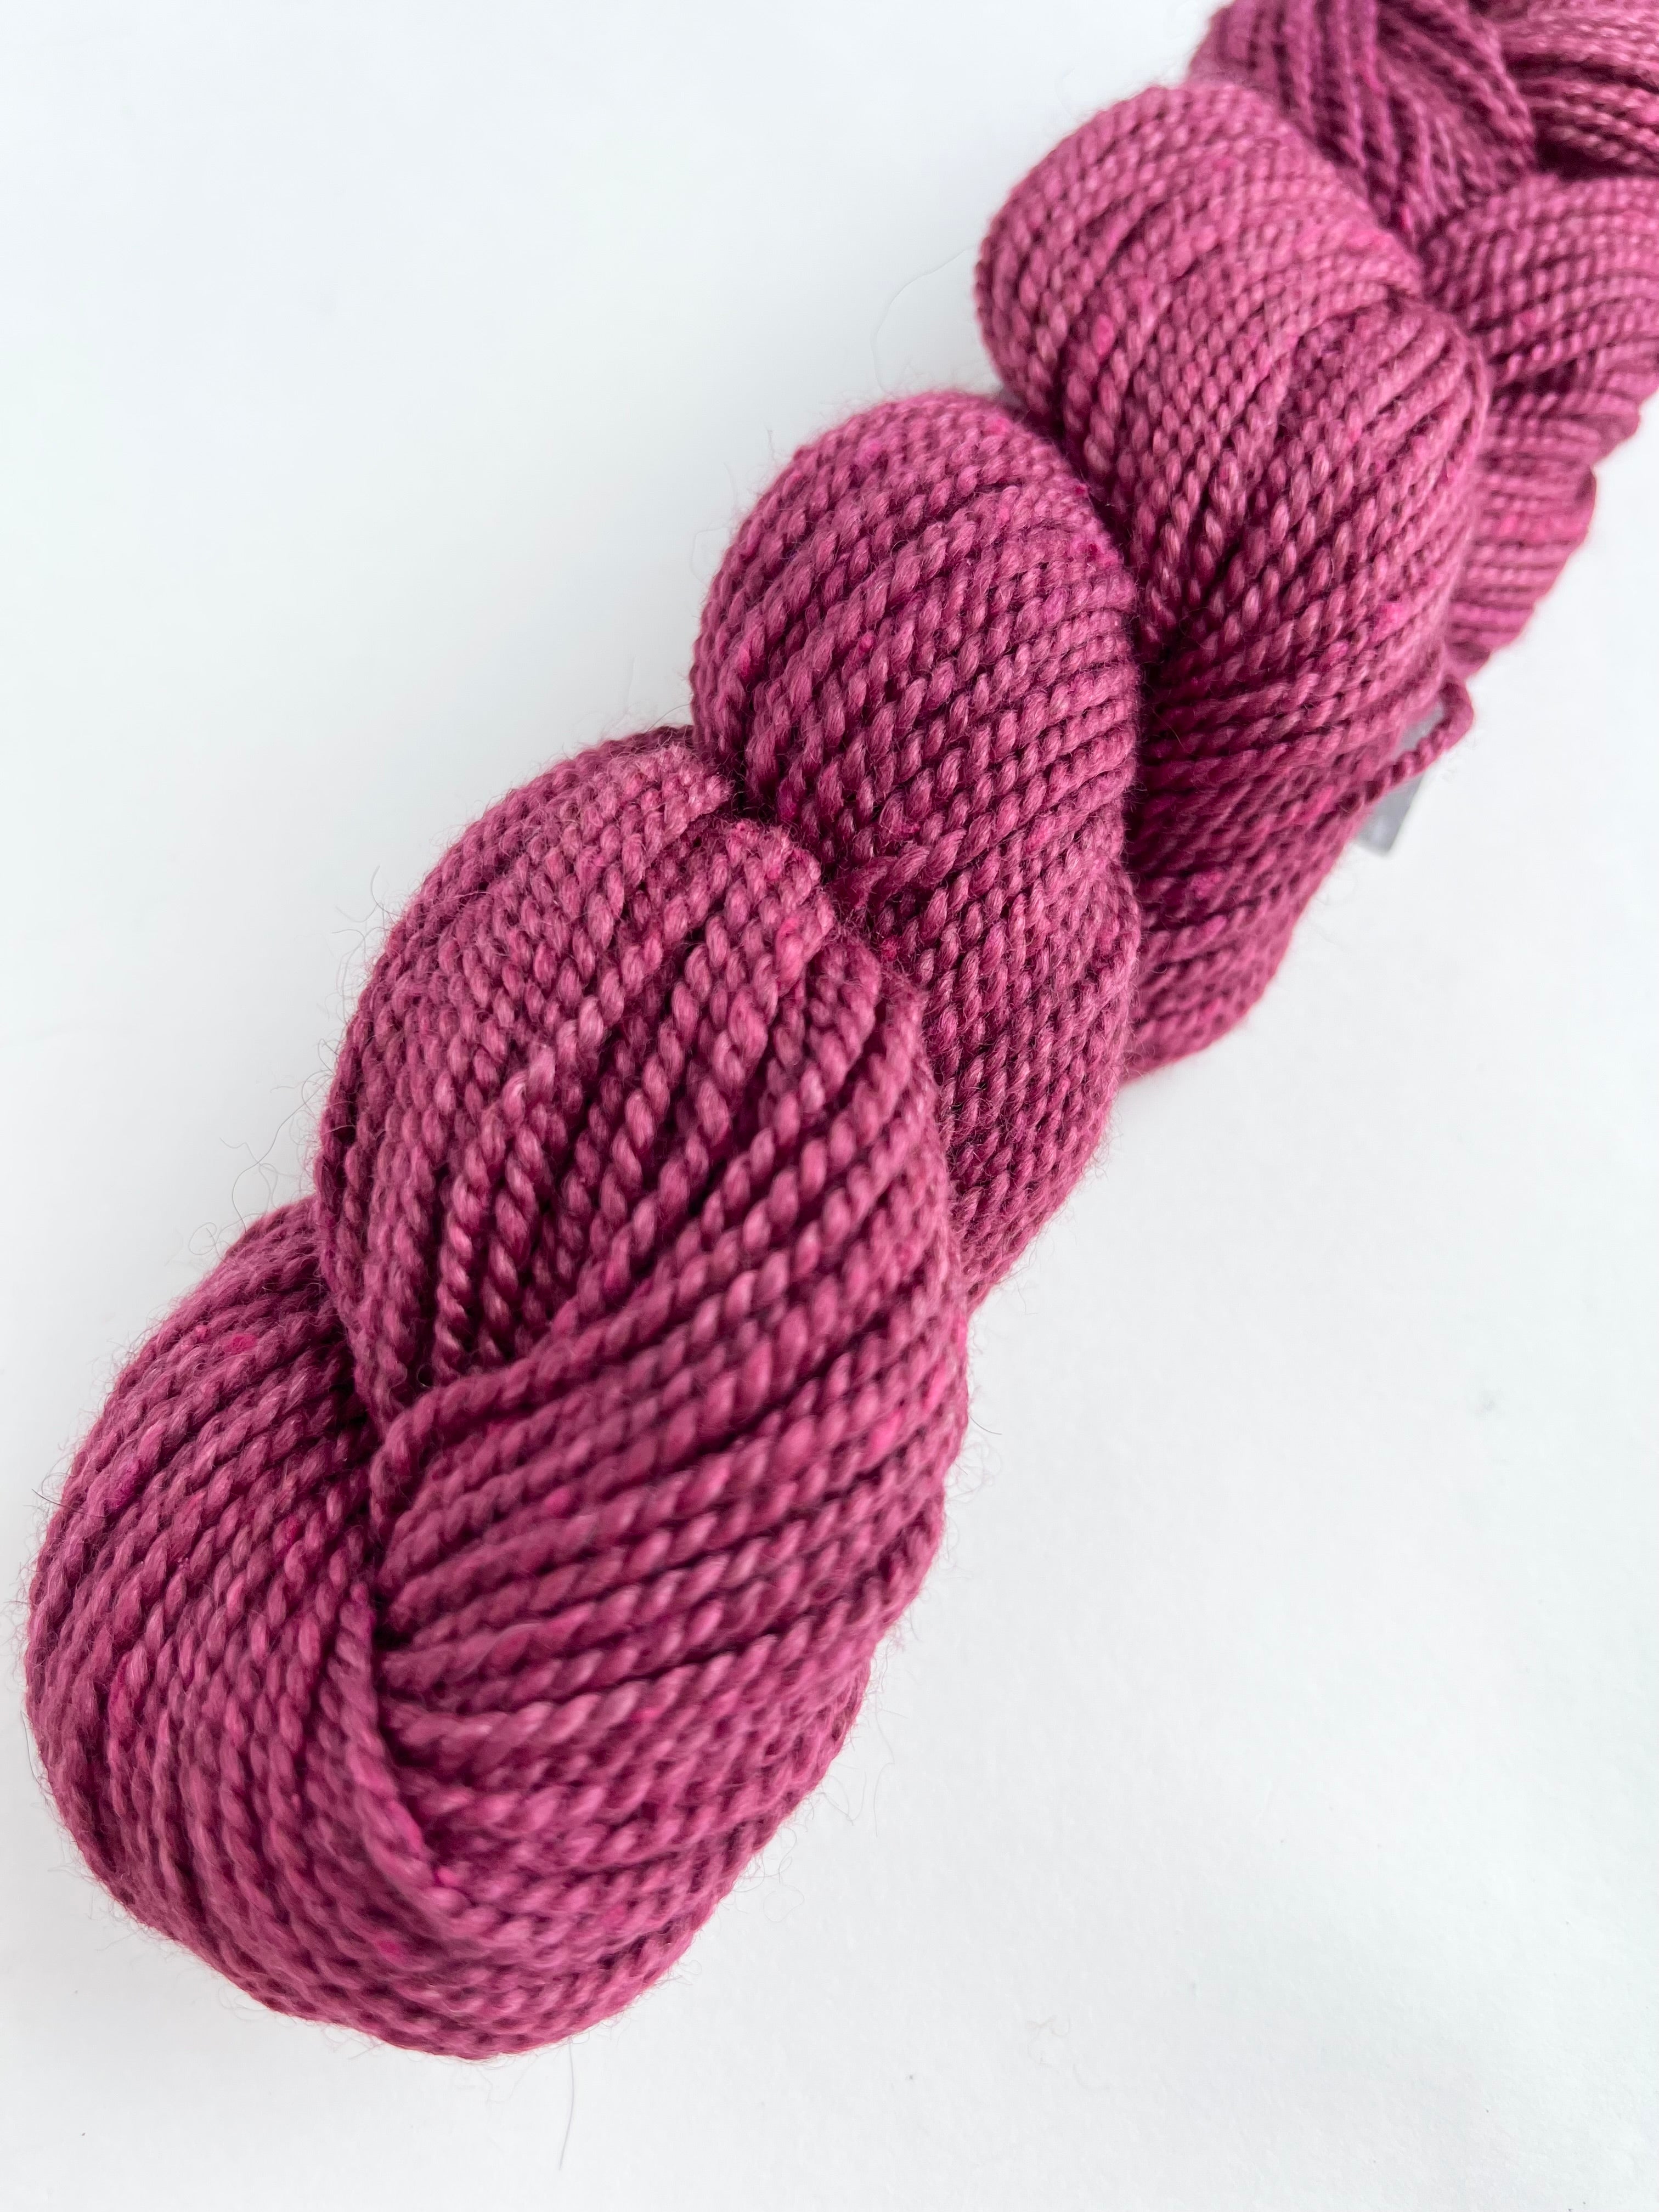 Acadia yarn from The Fibre Co.